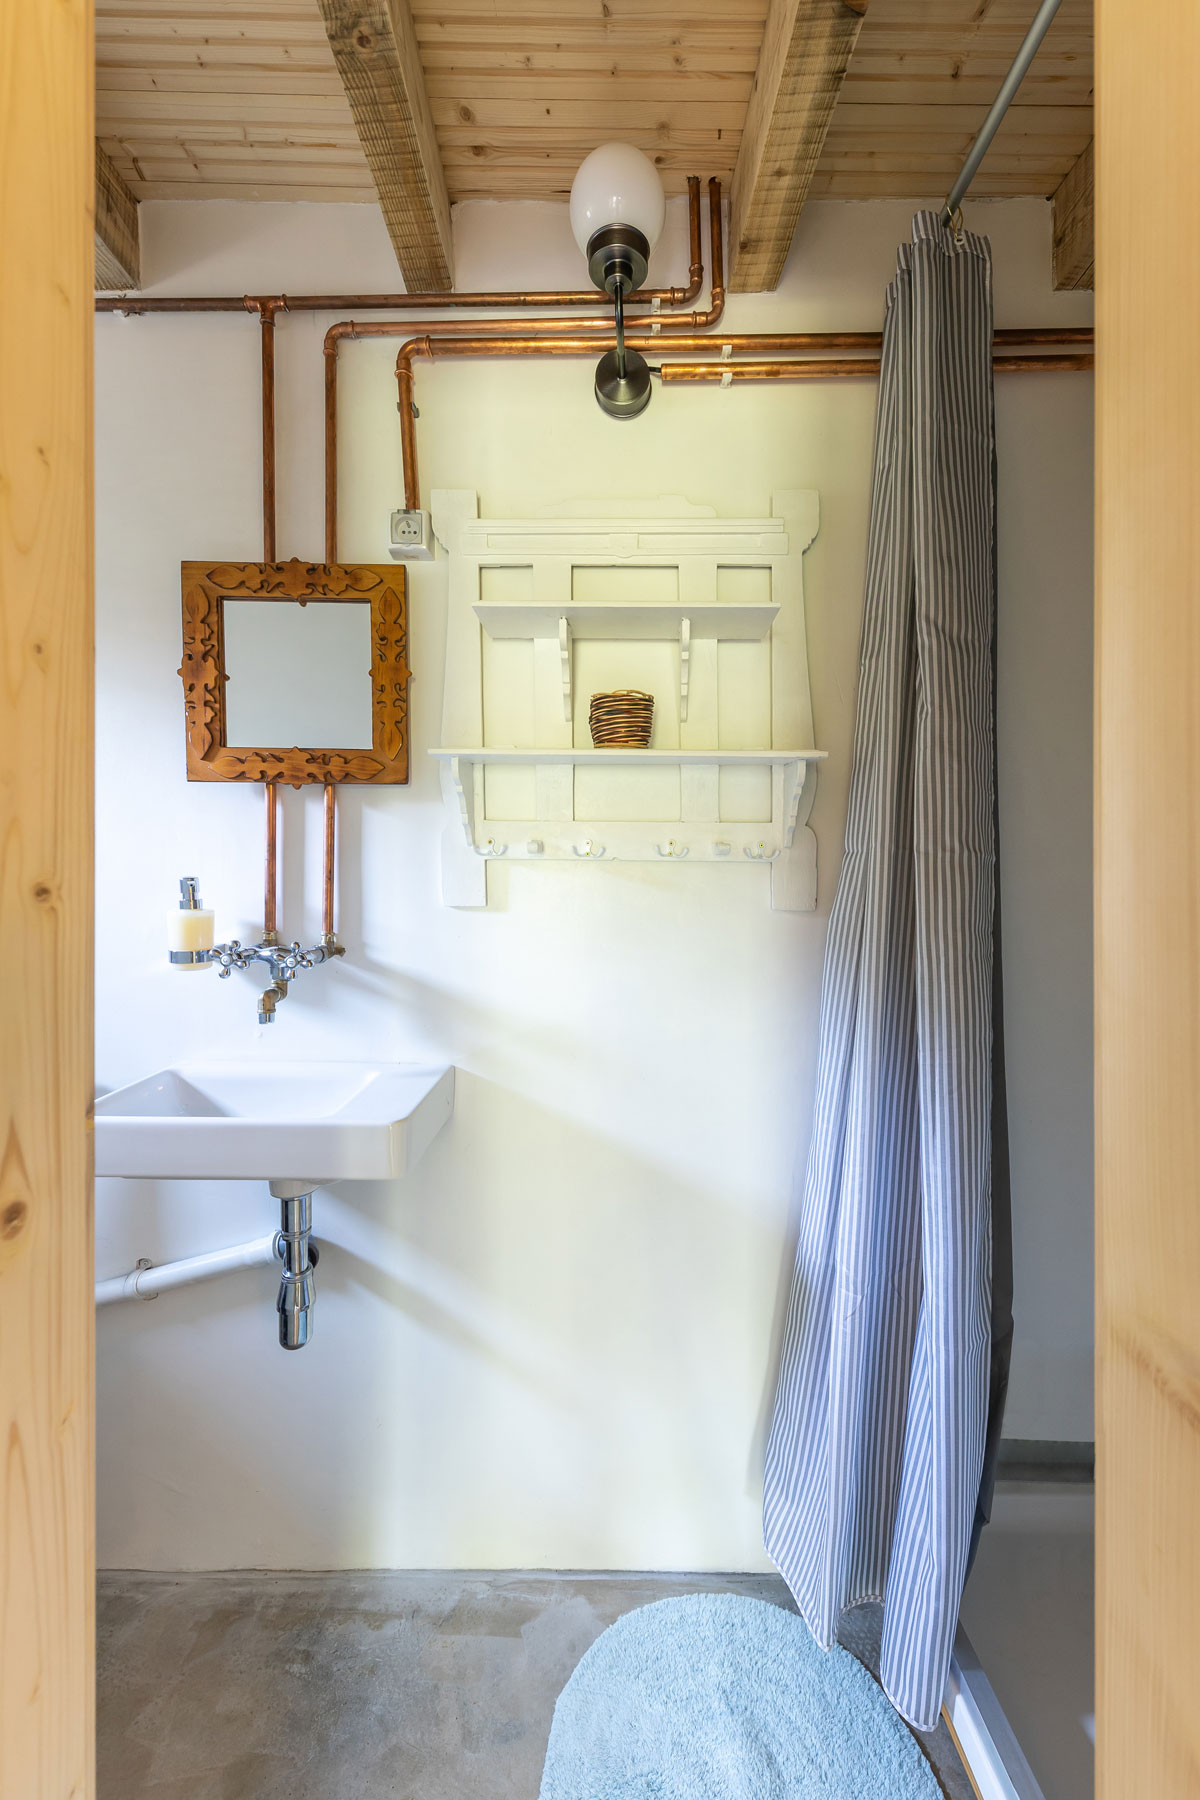 jednoduchá kúpeľňa v záhradnej chatke s betónovou podlahou, na stene sú priznané medené vodovodné rúrky